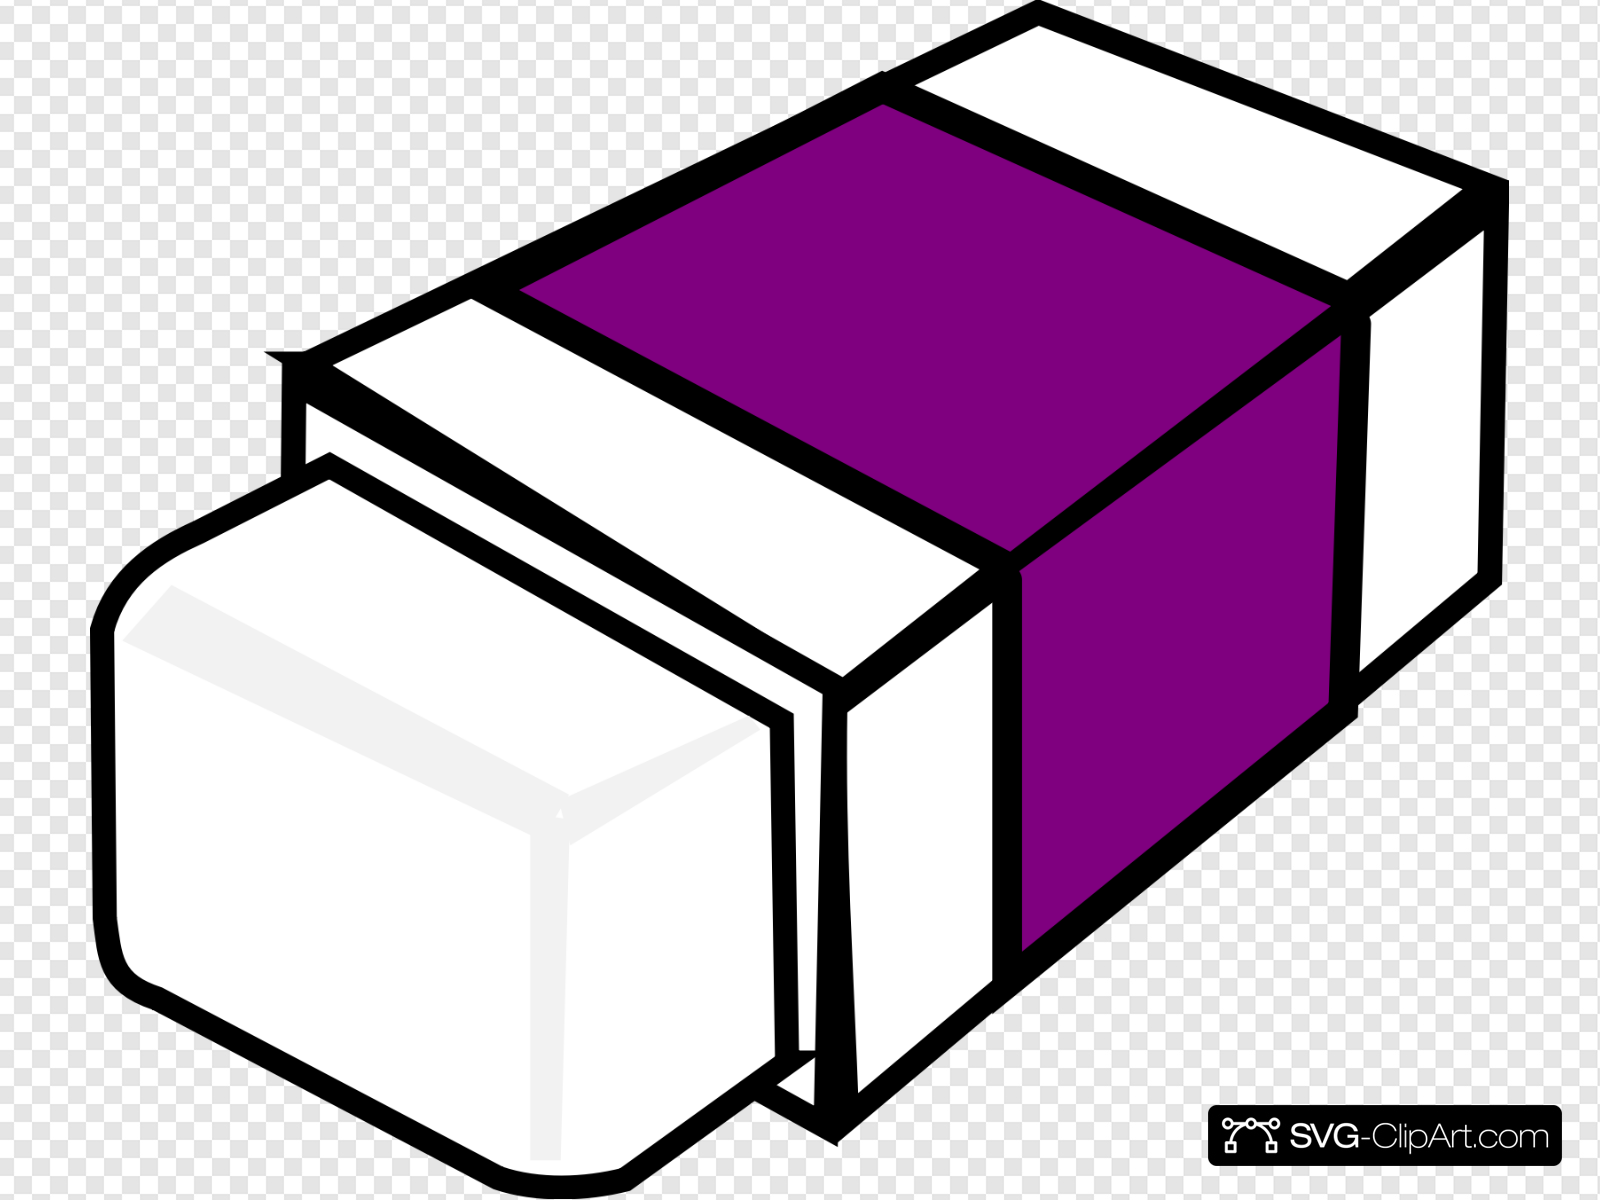 eraser clipart purple